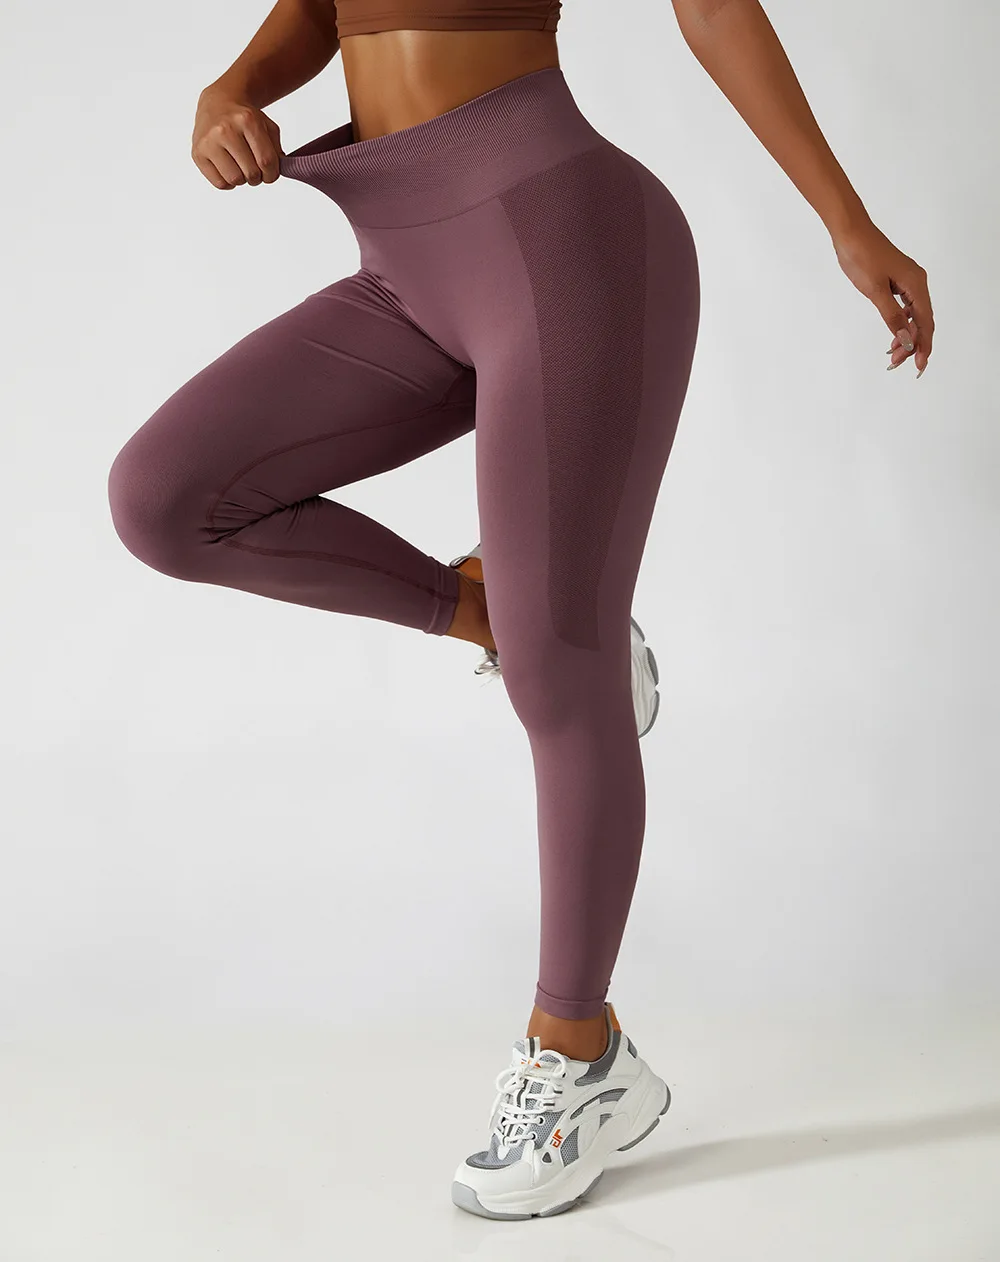 New Scrunch Butt Leggings For Women High Waist Exercise Legging